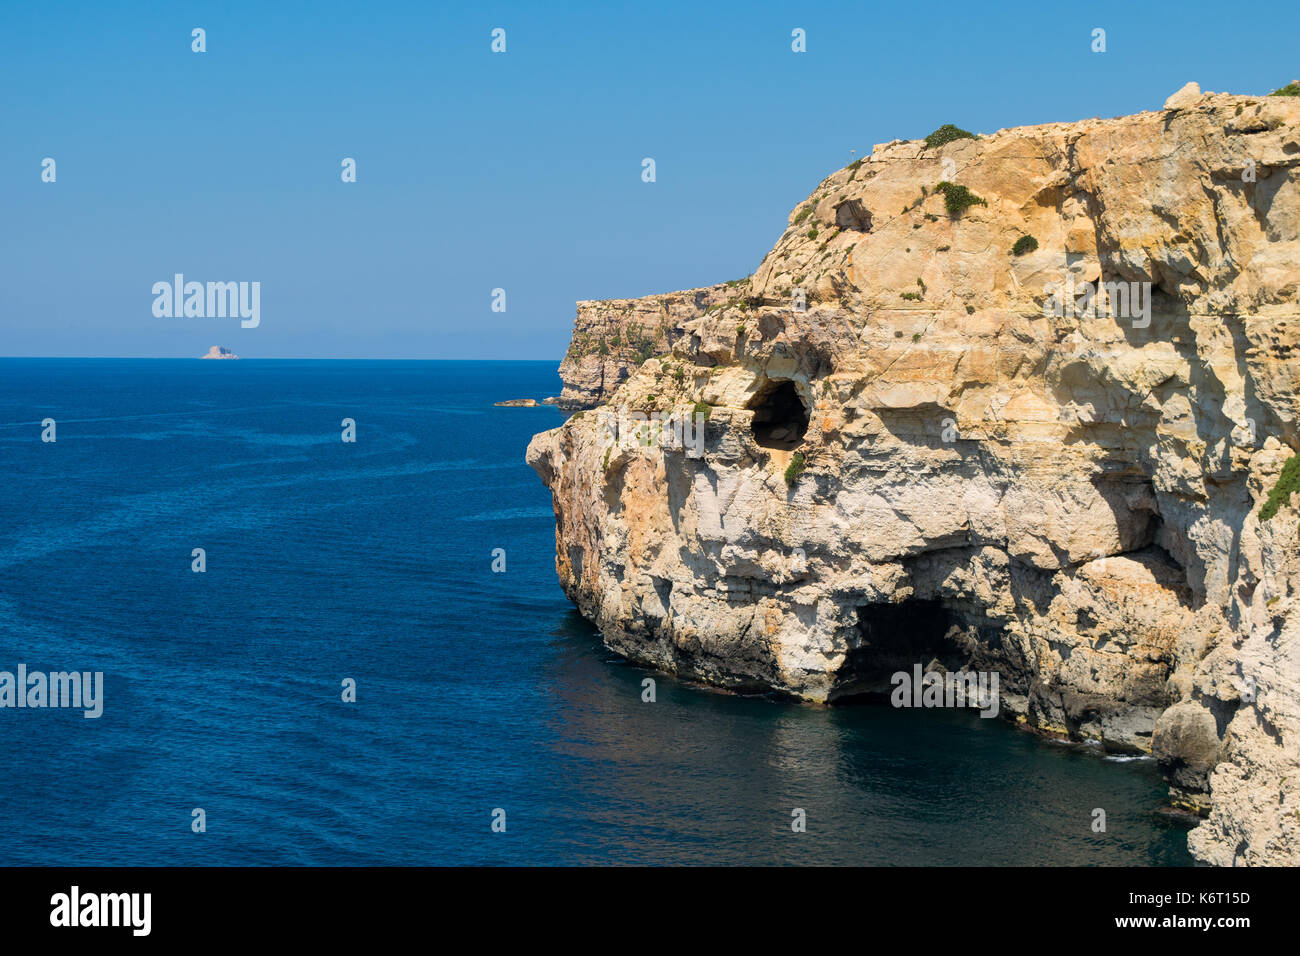 Ein Kalkstein Klippe in der südwestlichen Küste der maltesischen Inseln, zeigen Anzeichen von Erosion und Verwitterung und einem kleinen See Höhle. Malta Stockfoto